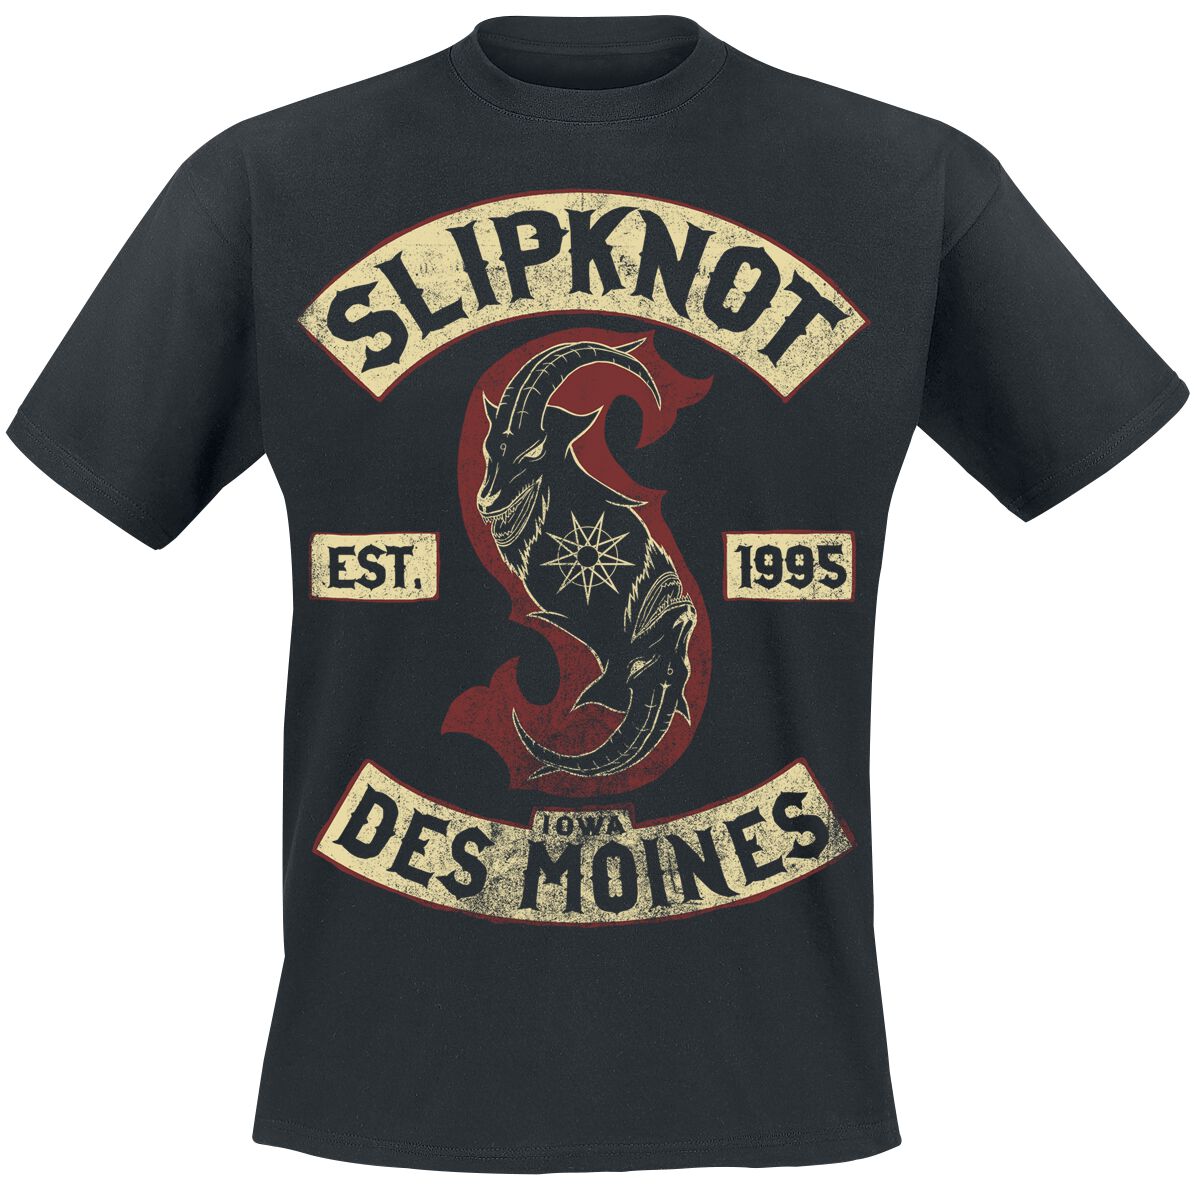 Slipknot T-Shirt - Iowa Des Moines - S bis 3XL - für Männer - Größe XL - schwarz  - Lizenziertes Merchandise!